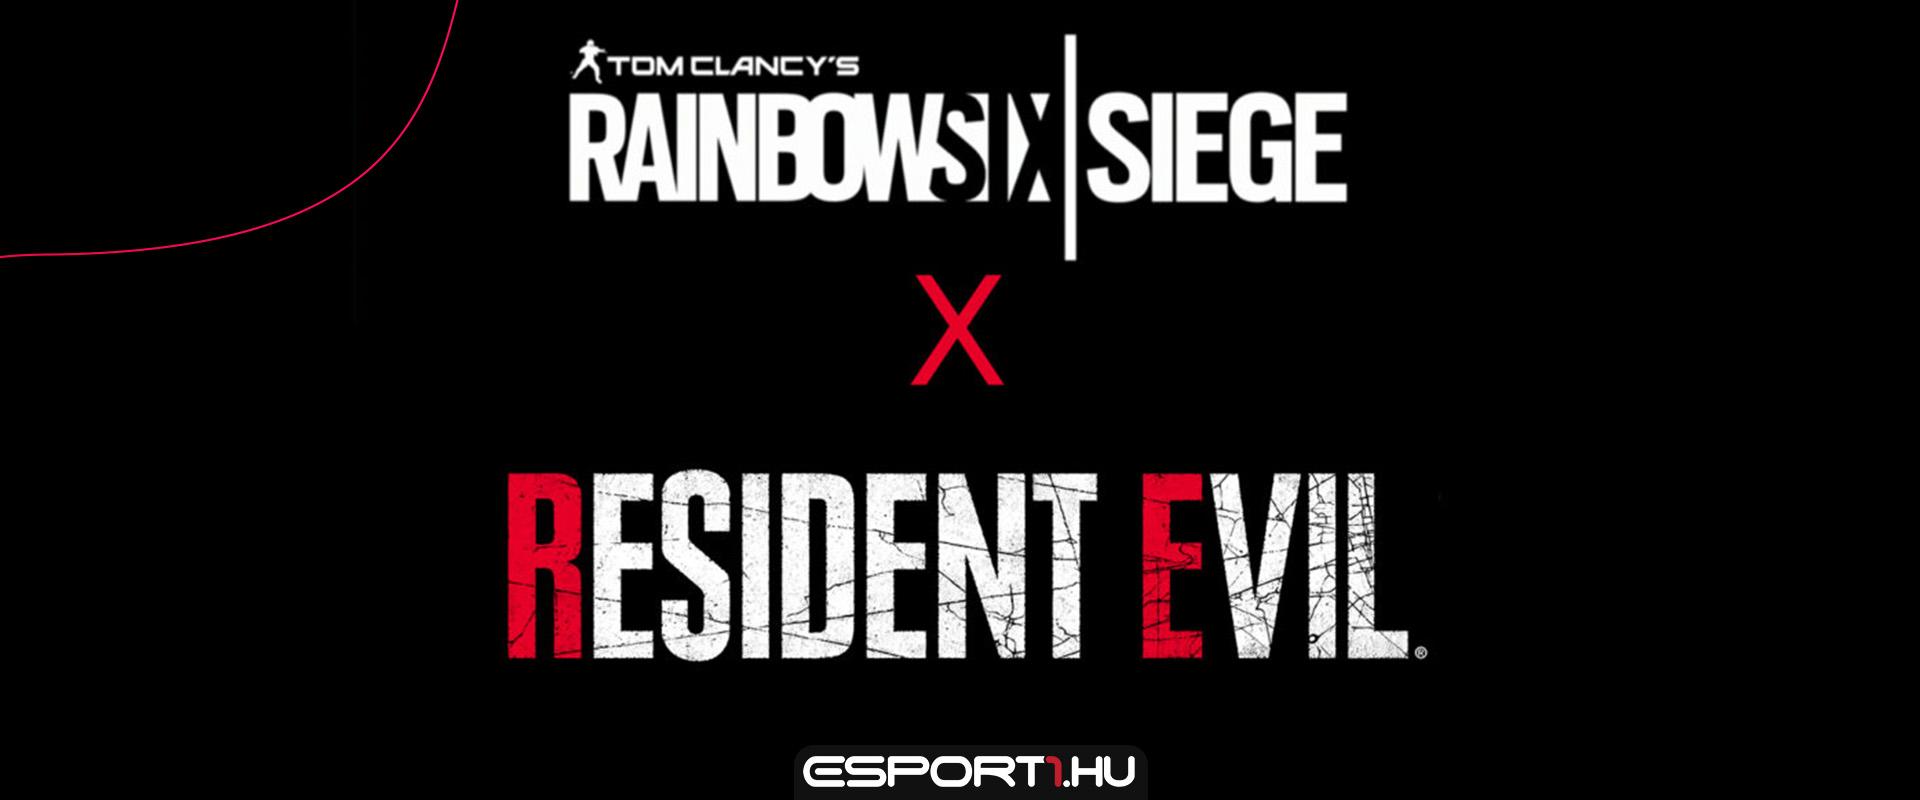 Jill után újabb Resident Evil főszereplő kap skin-t a Rainbow Six: Siege-ben